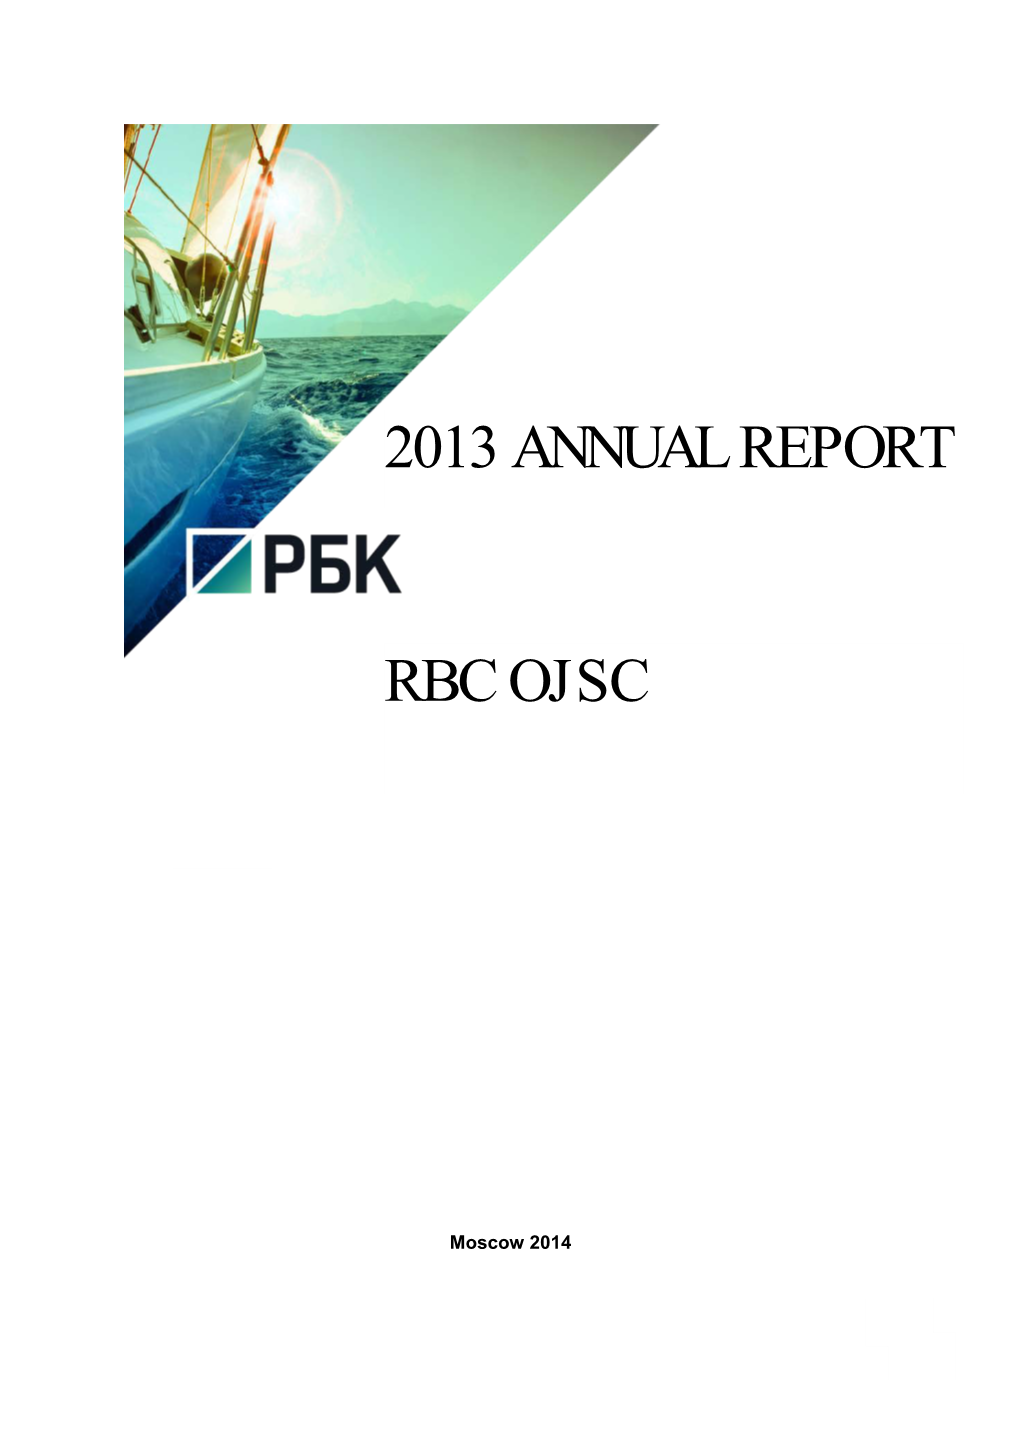 RBC Annual Report 2013